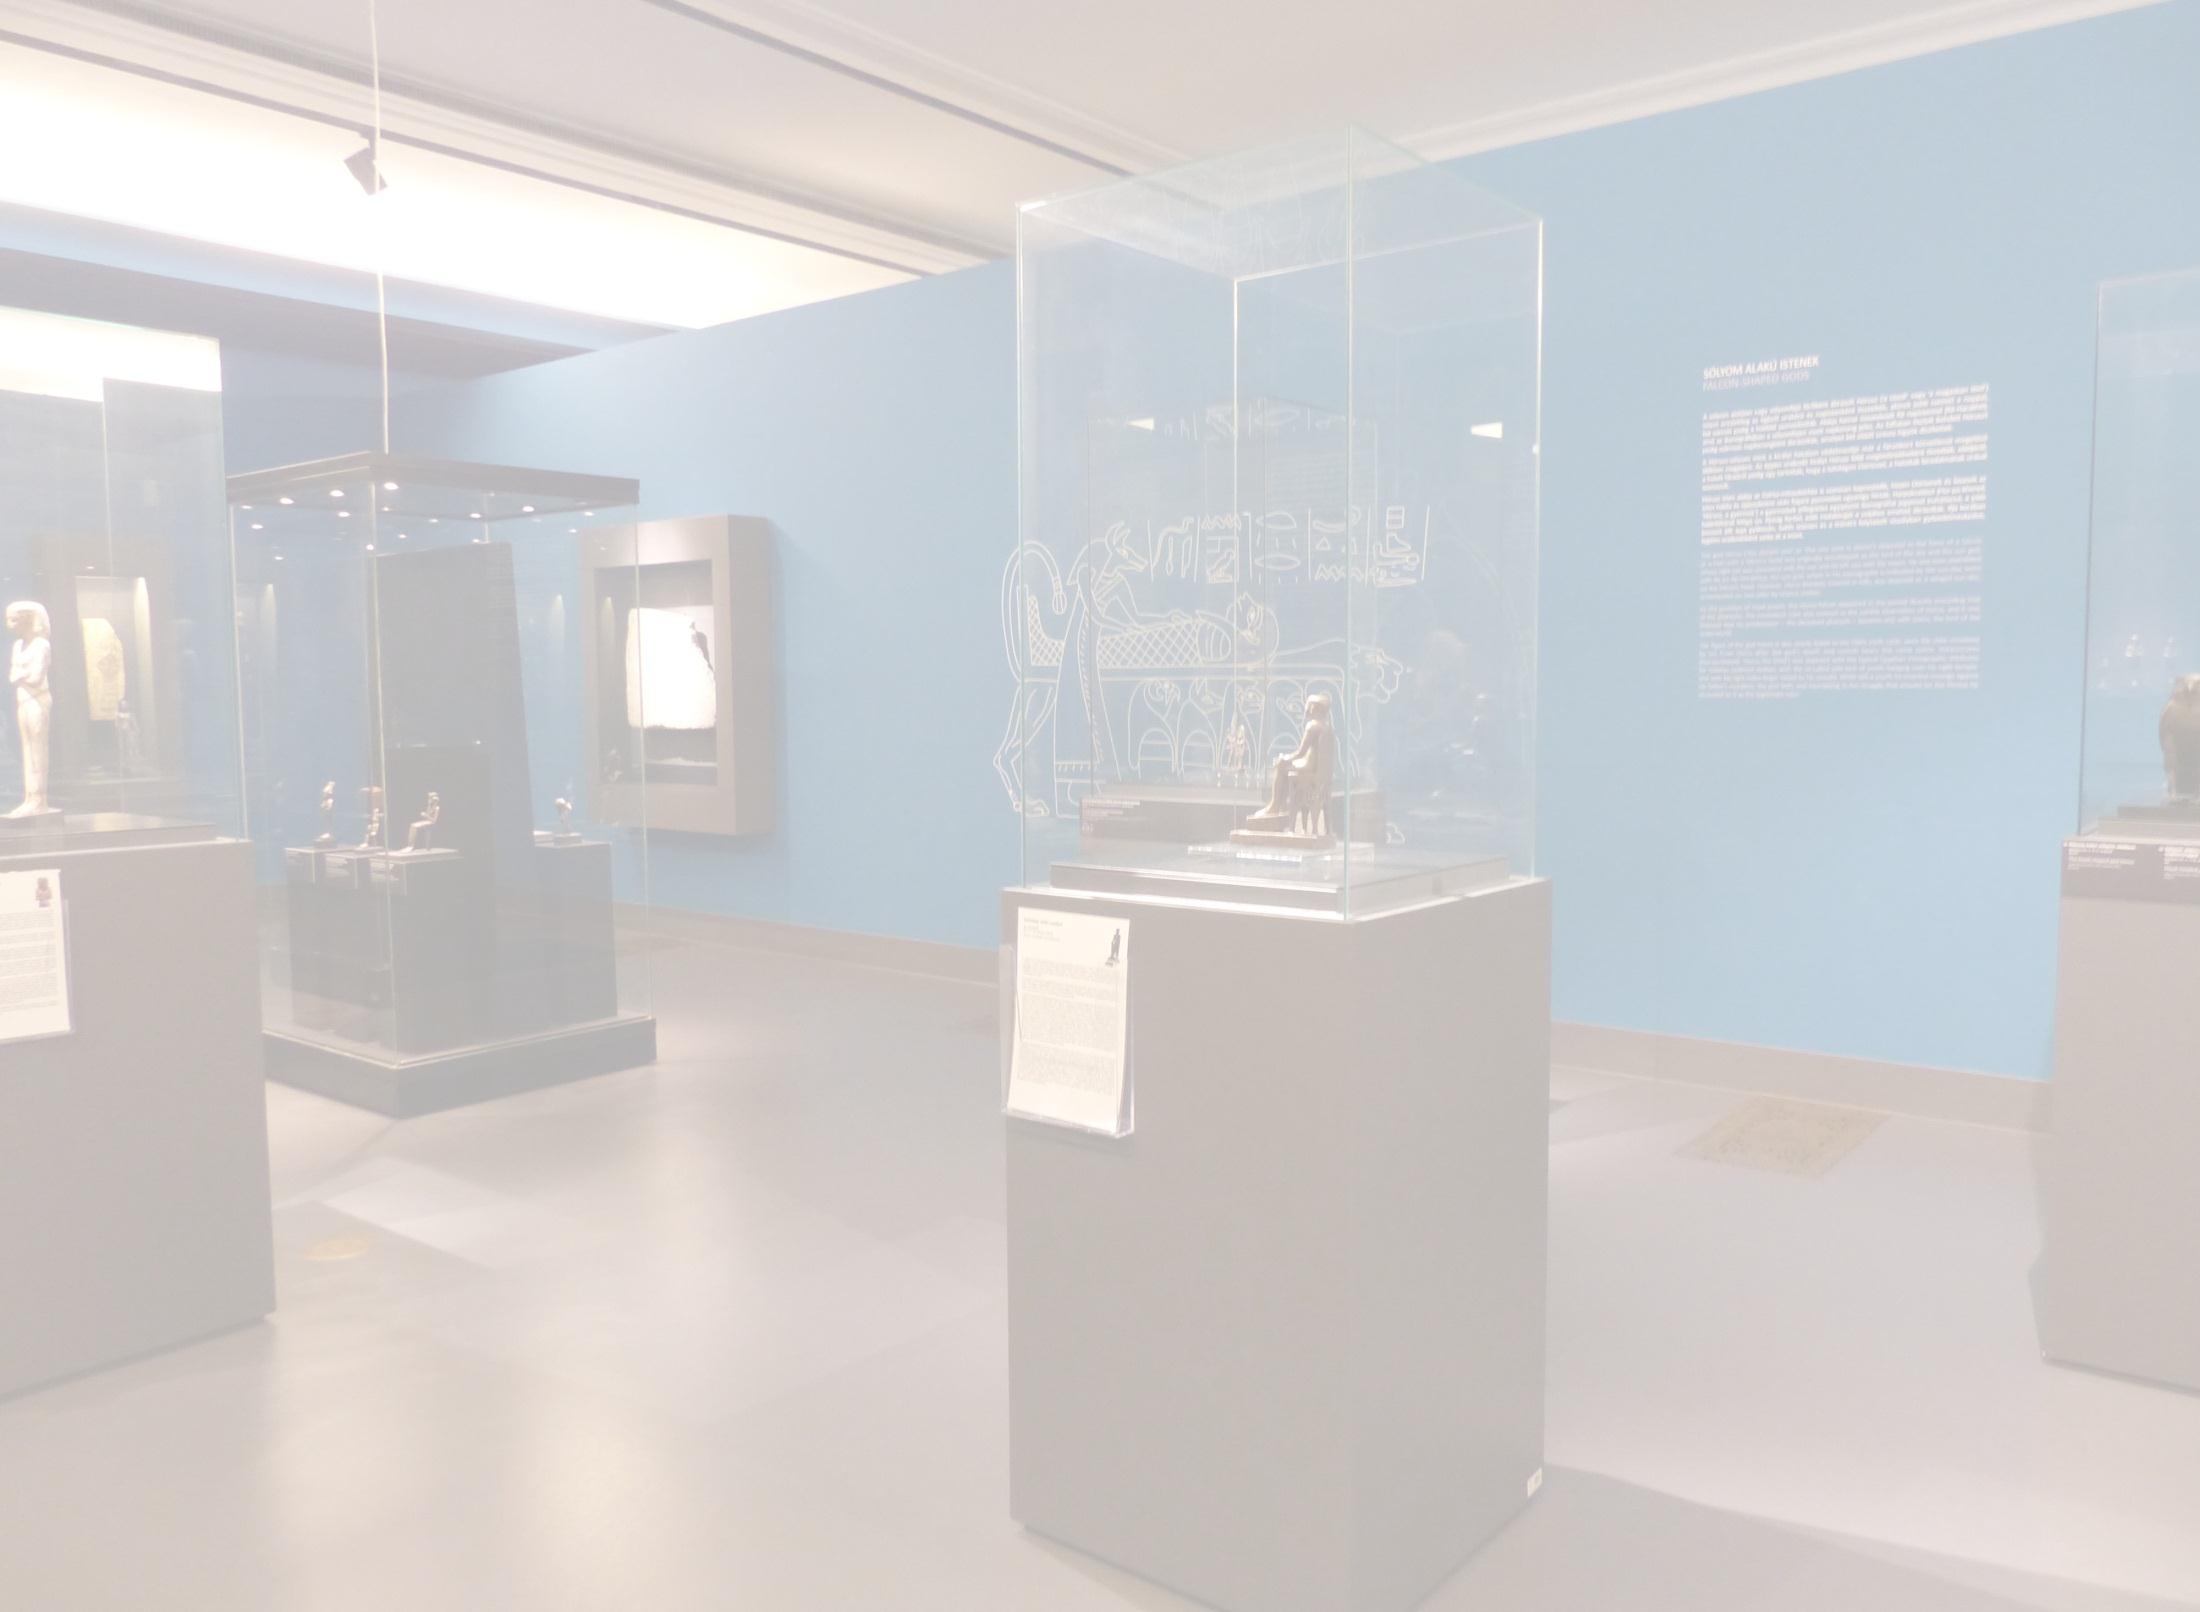 Kapcsolat önyvtár műhely Osztály Kiállítás 1996-2009 3D épe orvoslás foglalozás vetéledő műhely muna tárlatvezetés műterem alotóház múzeumi örép